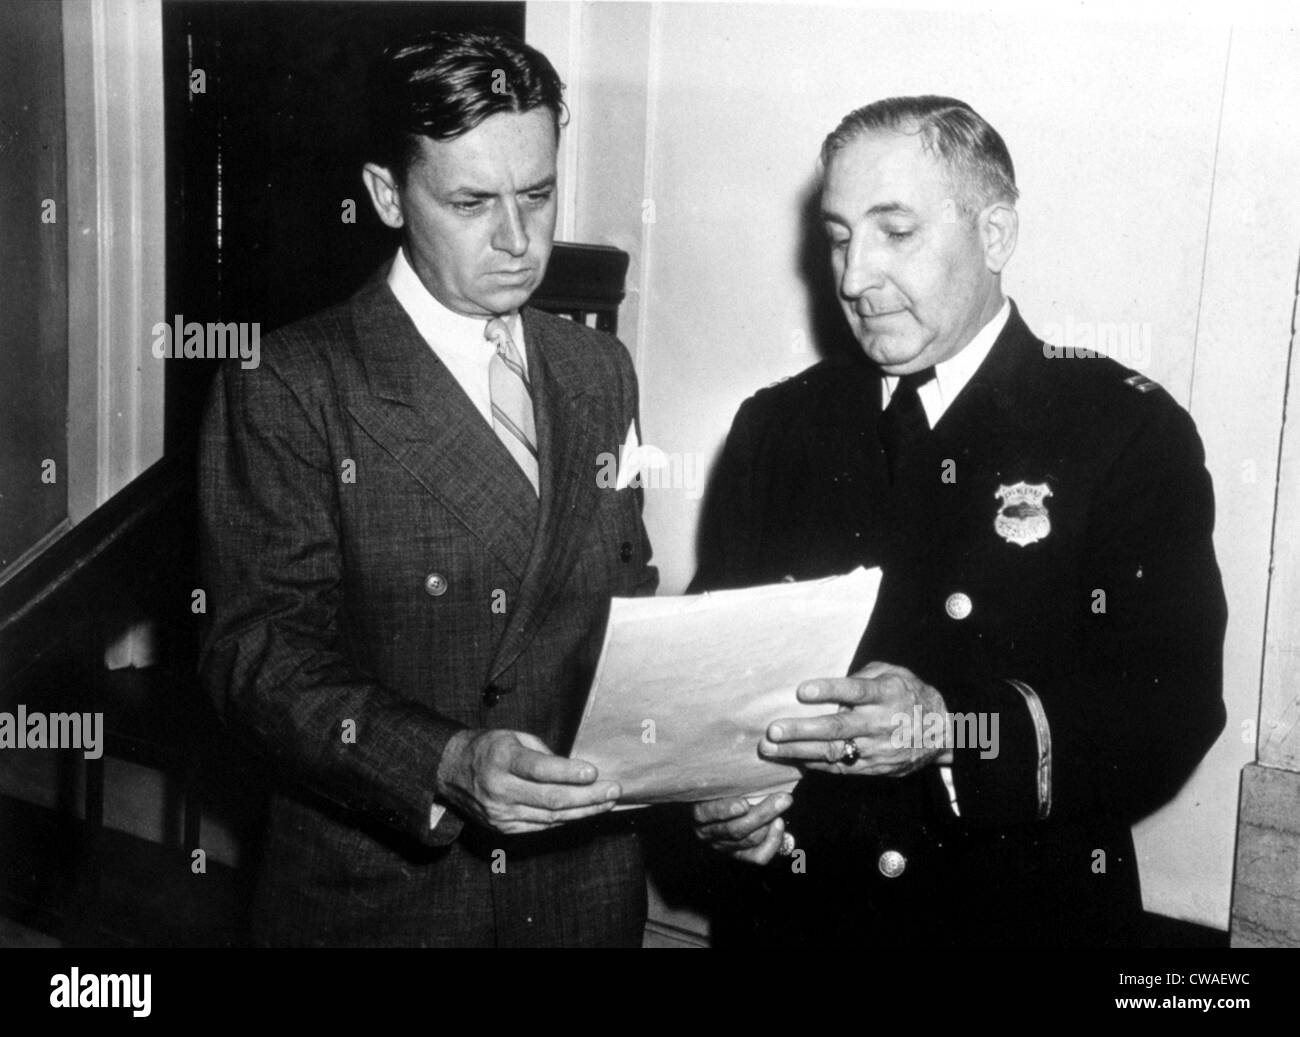 Elliot Ness con el capitán Arthur Roth del departamento de policía de Cleveland, 1940. Cortesía: CSU Archives / Everett Collection Foto de stock